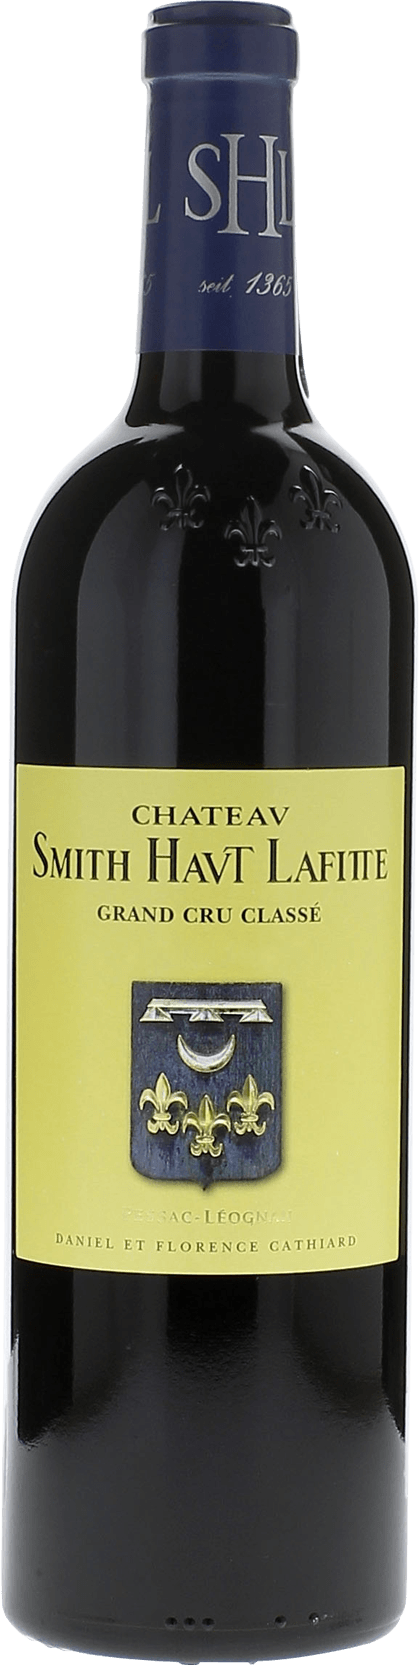 Smith haut lafitte 2003 Grand Cru Class Graves, Bordeaux rouge